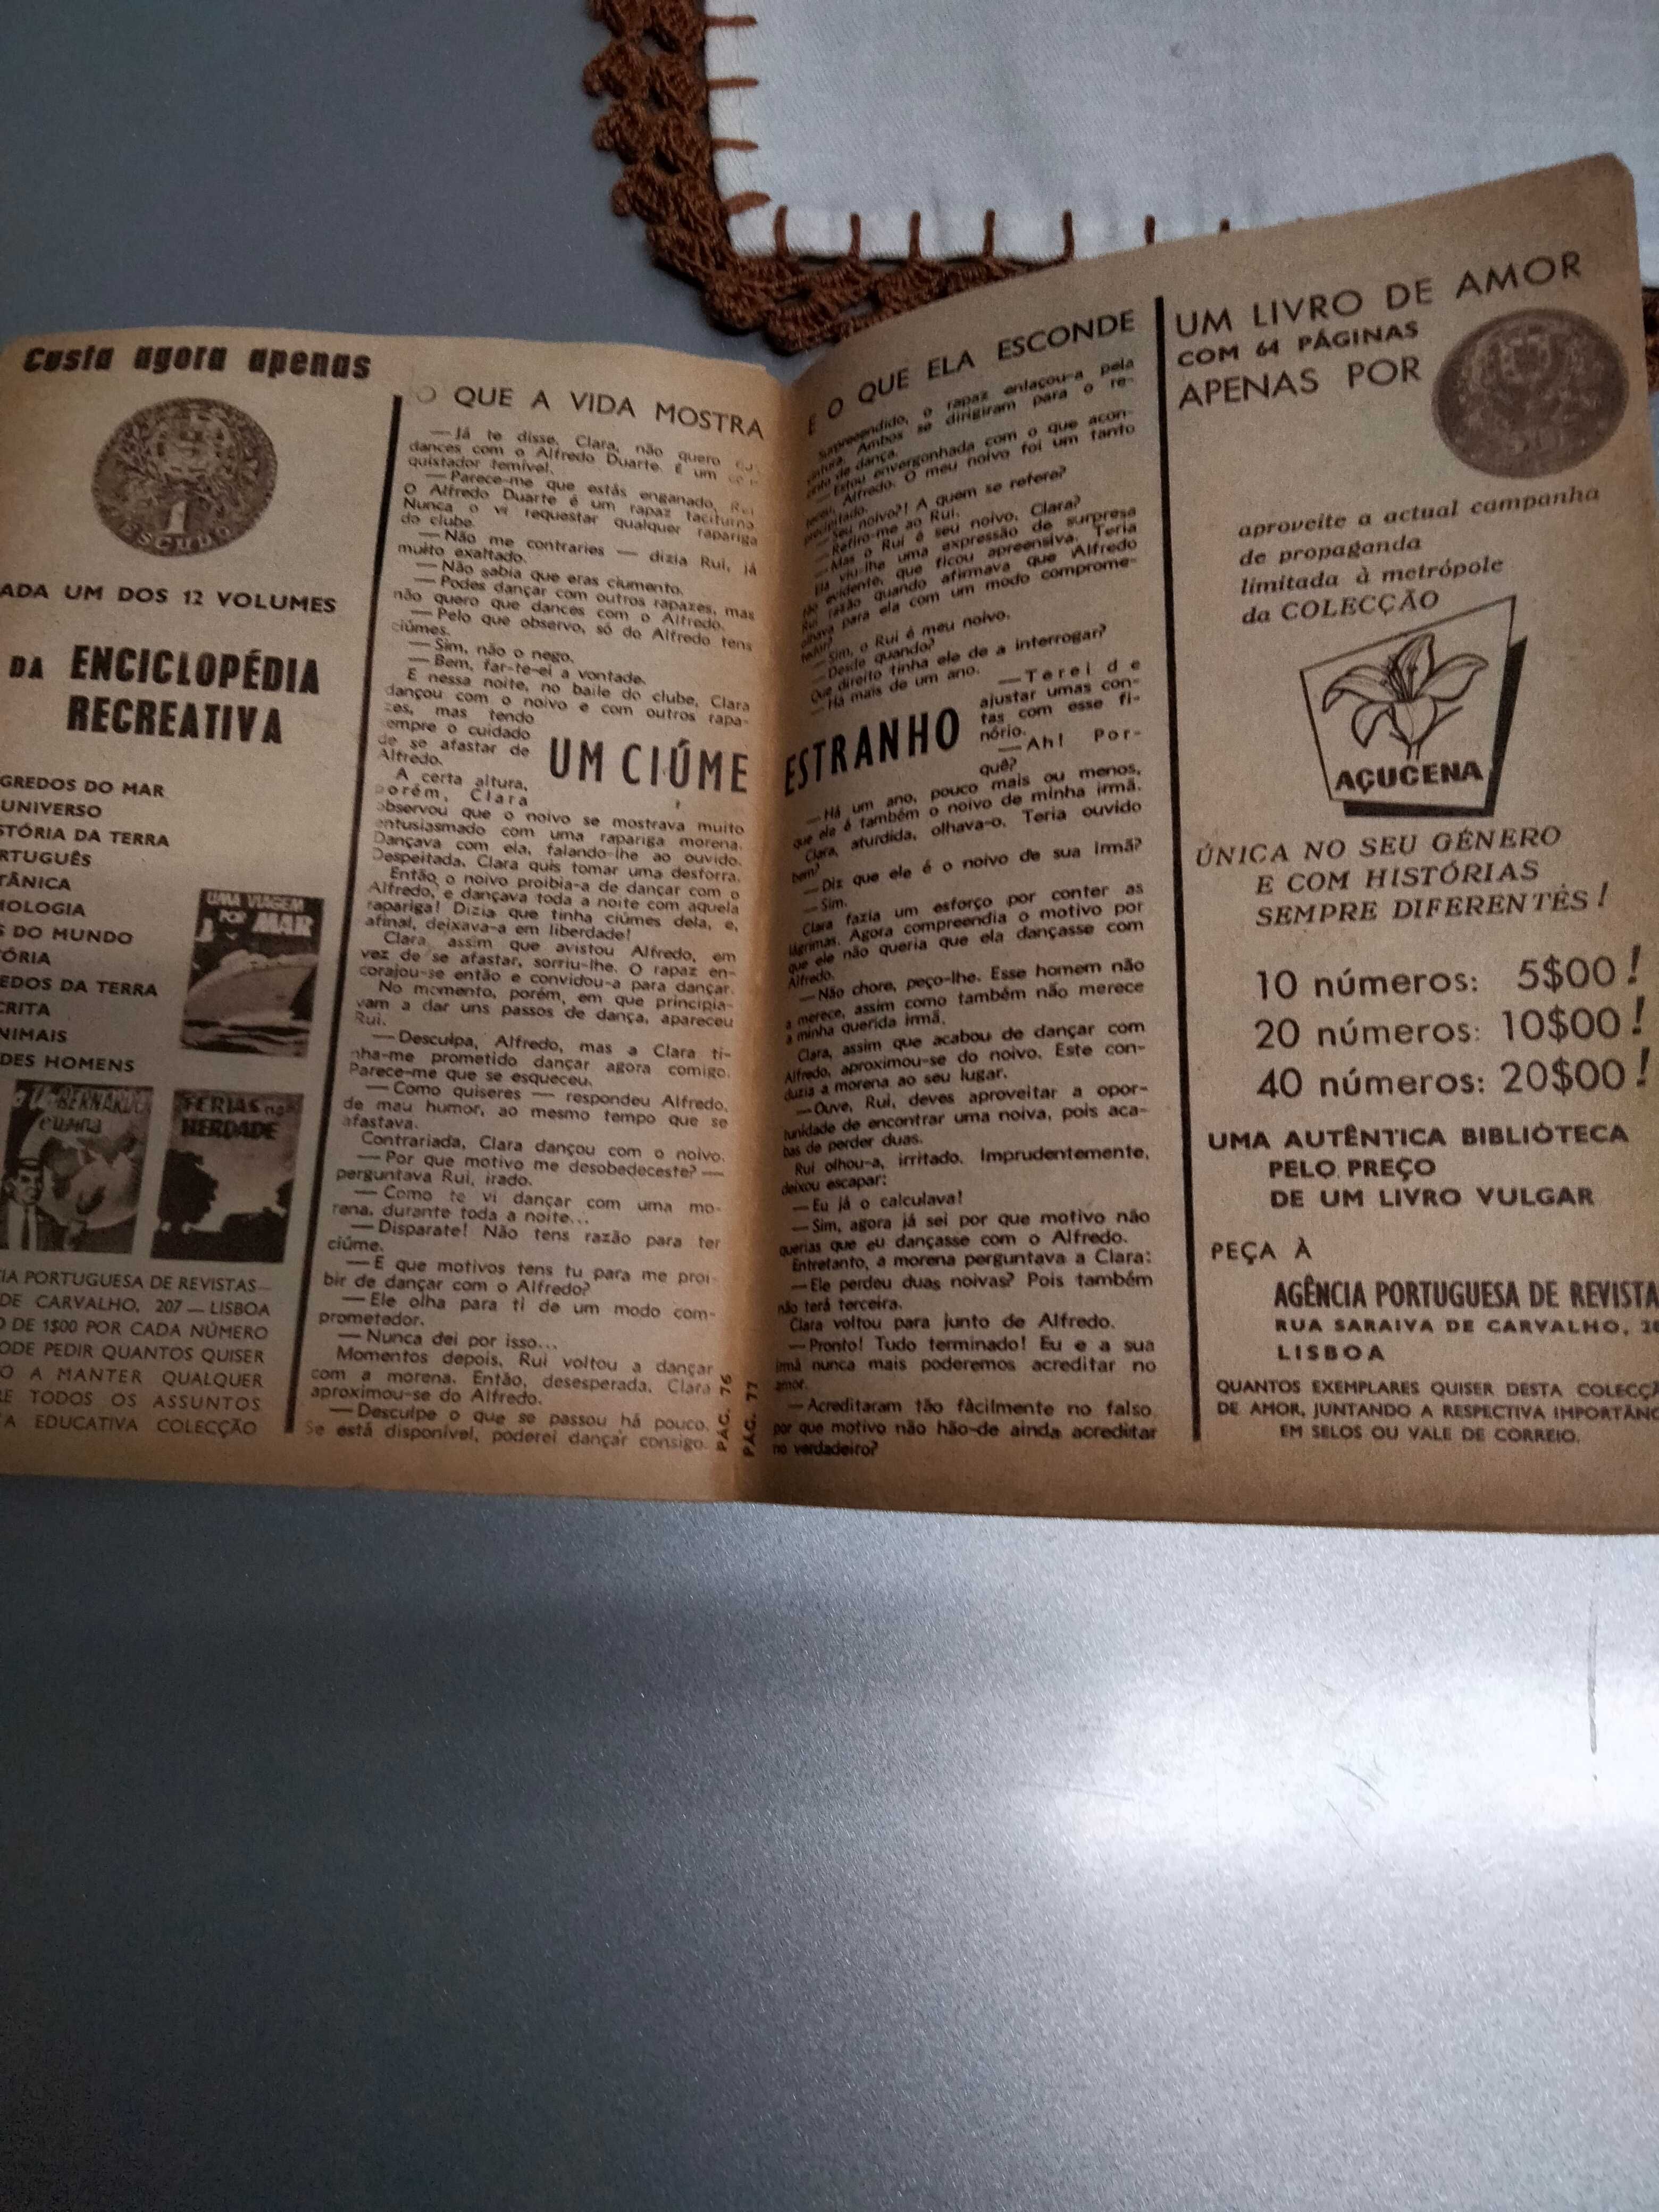 Crônica revista de 1962